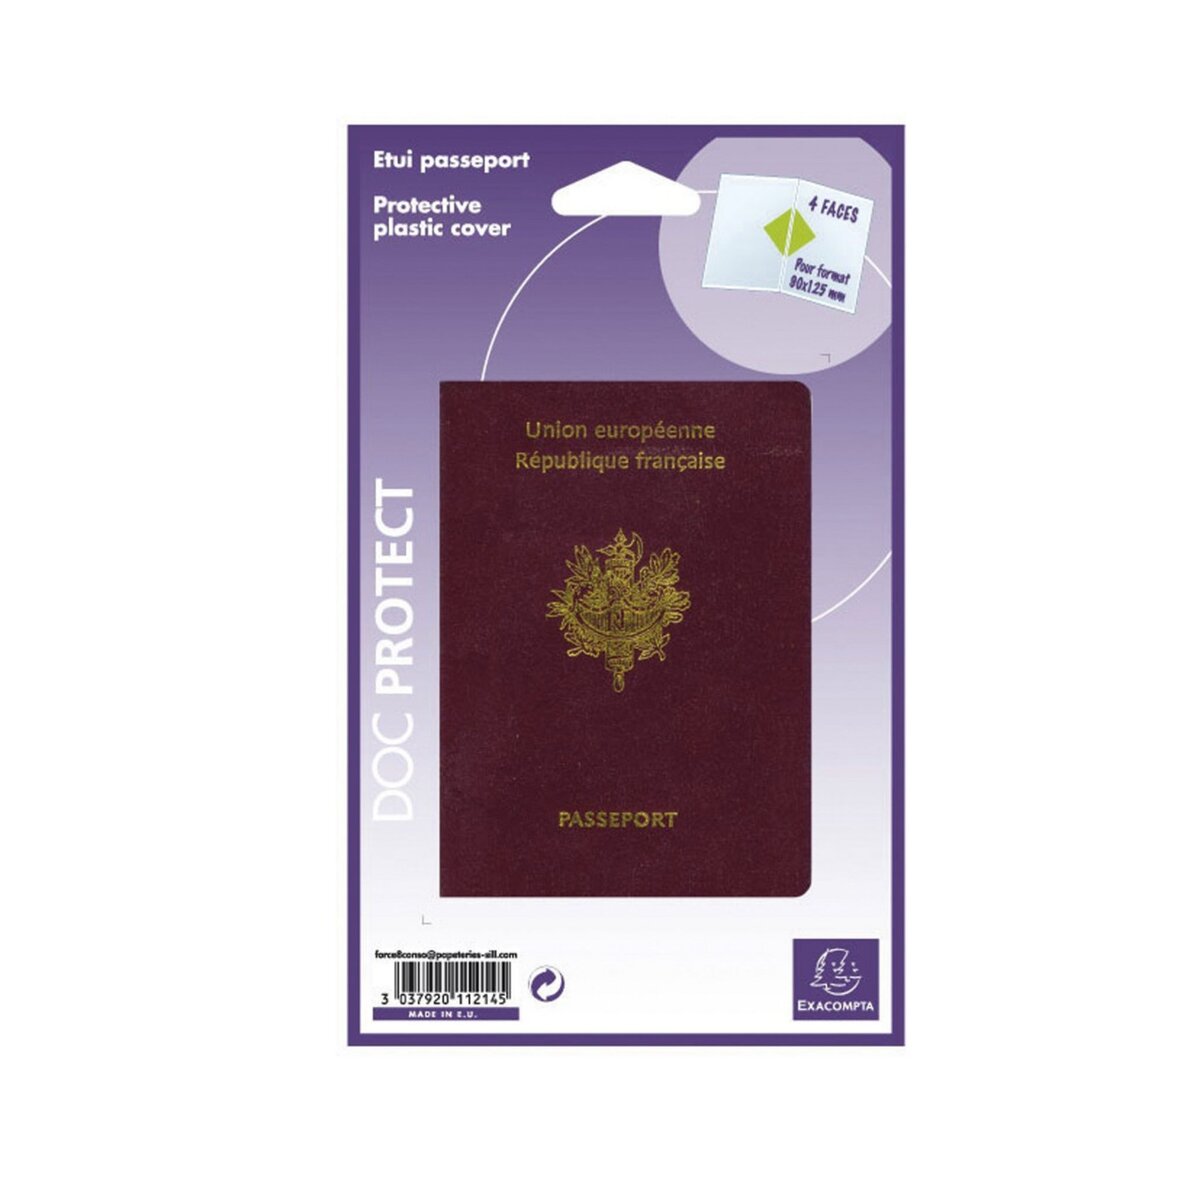 EXACOMPTA Etui passeport 133x95 - 4 faces